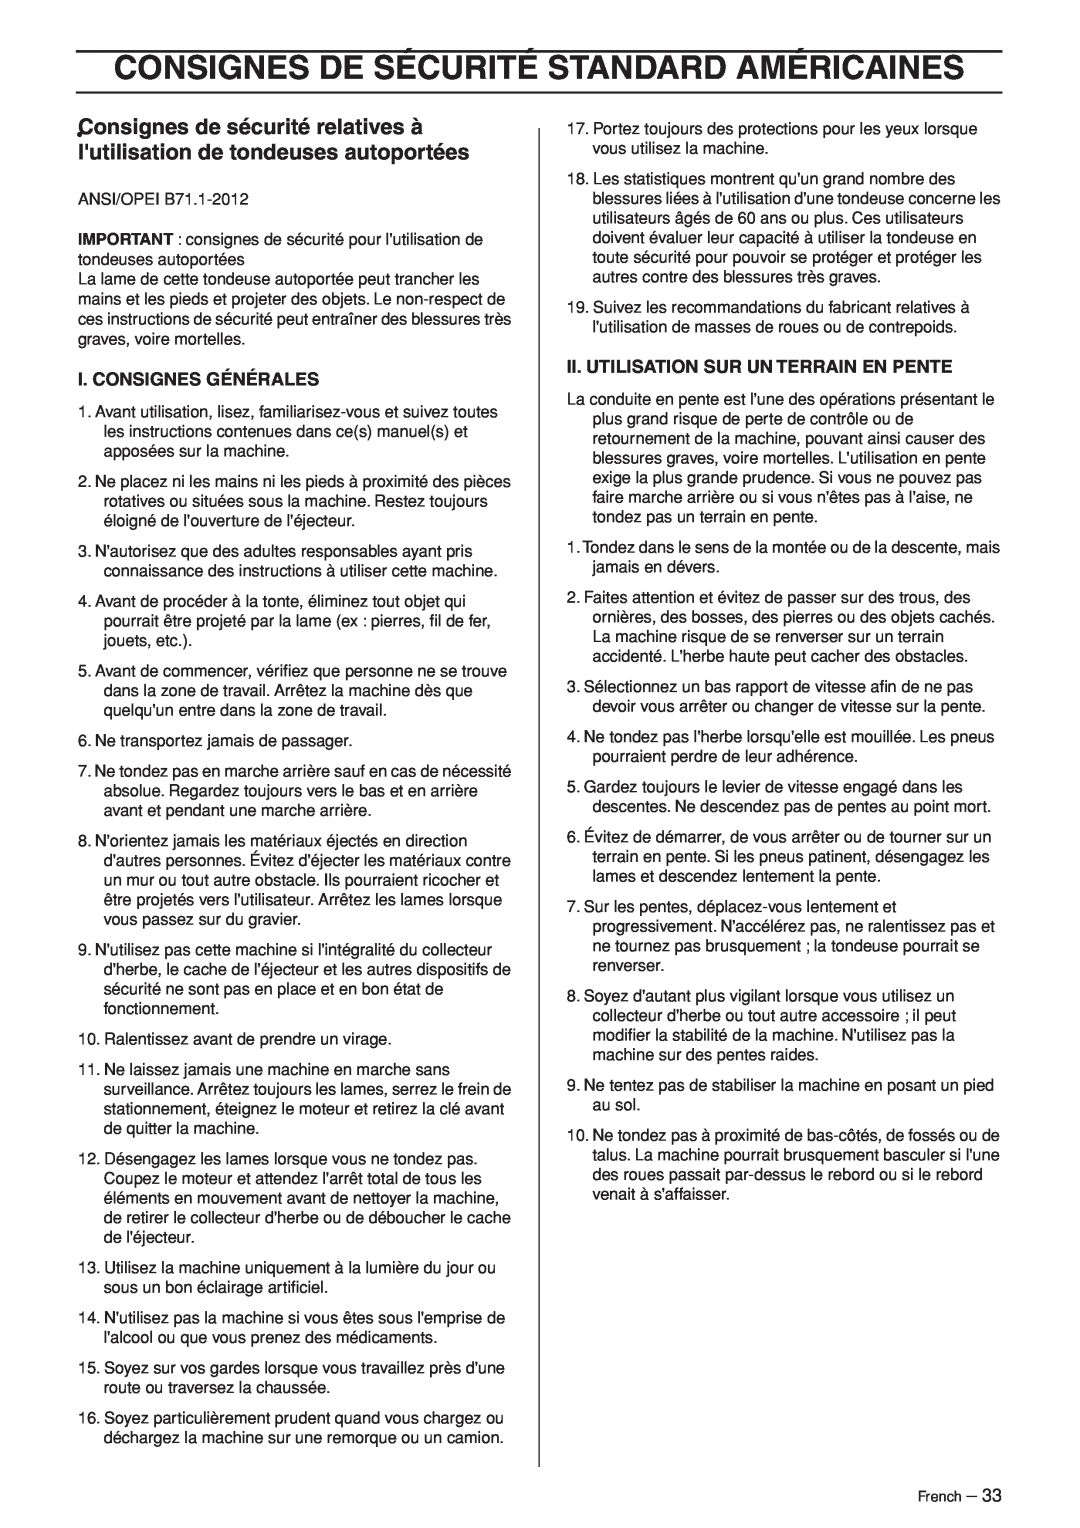 Husqvarna R120S manuel dutilisation Consignes De Sécurité Standard Américaines, I. Consignes Générales 